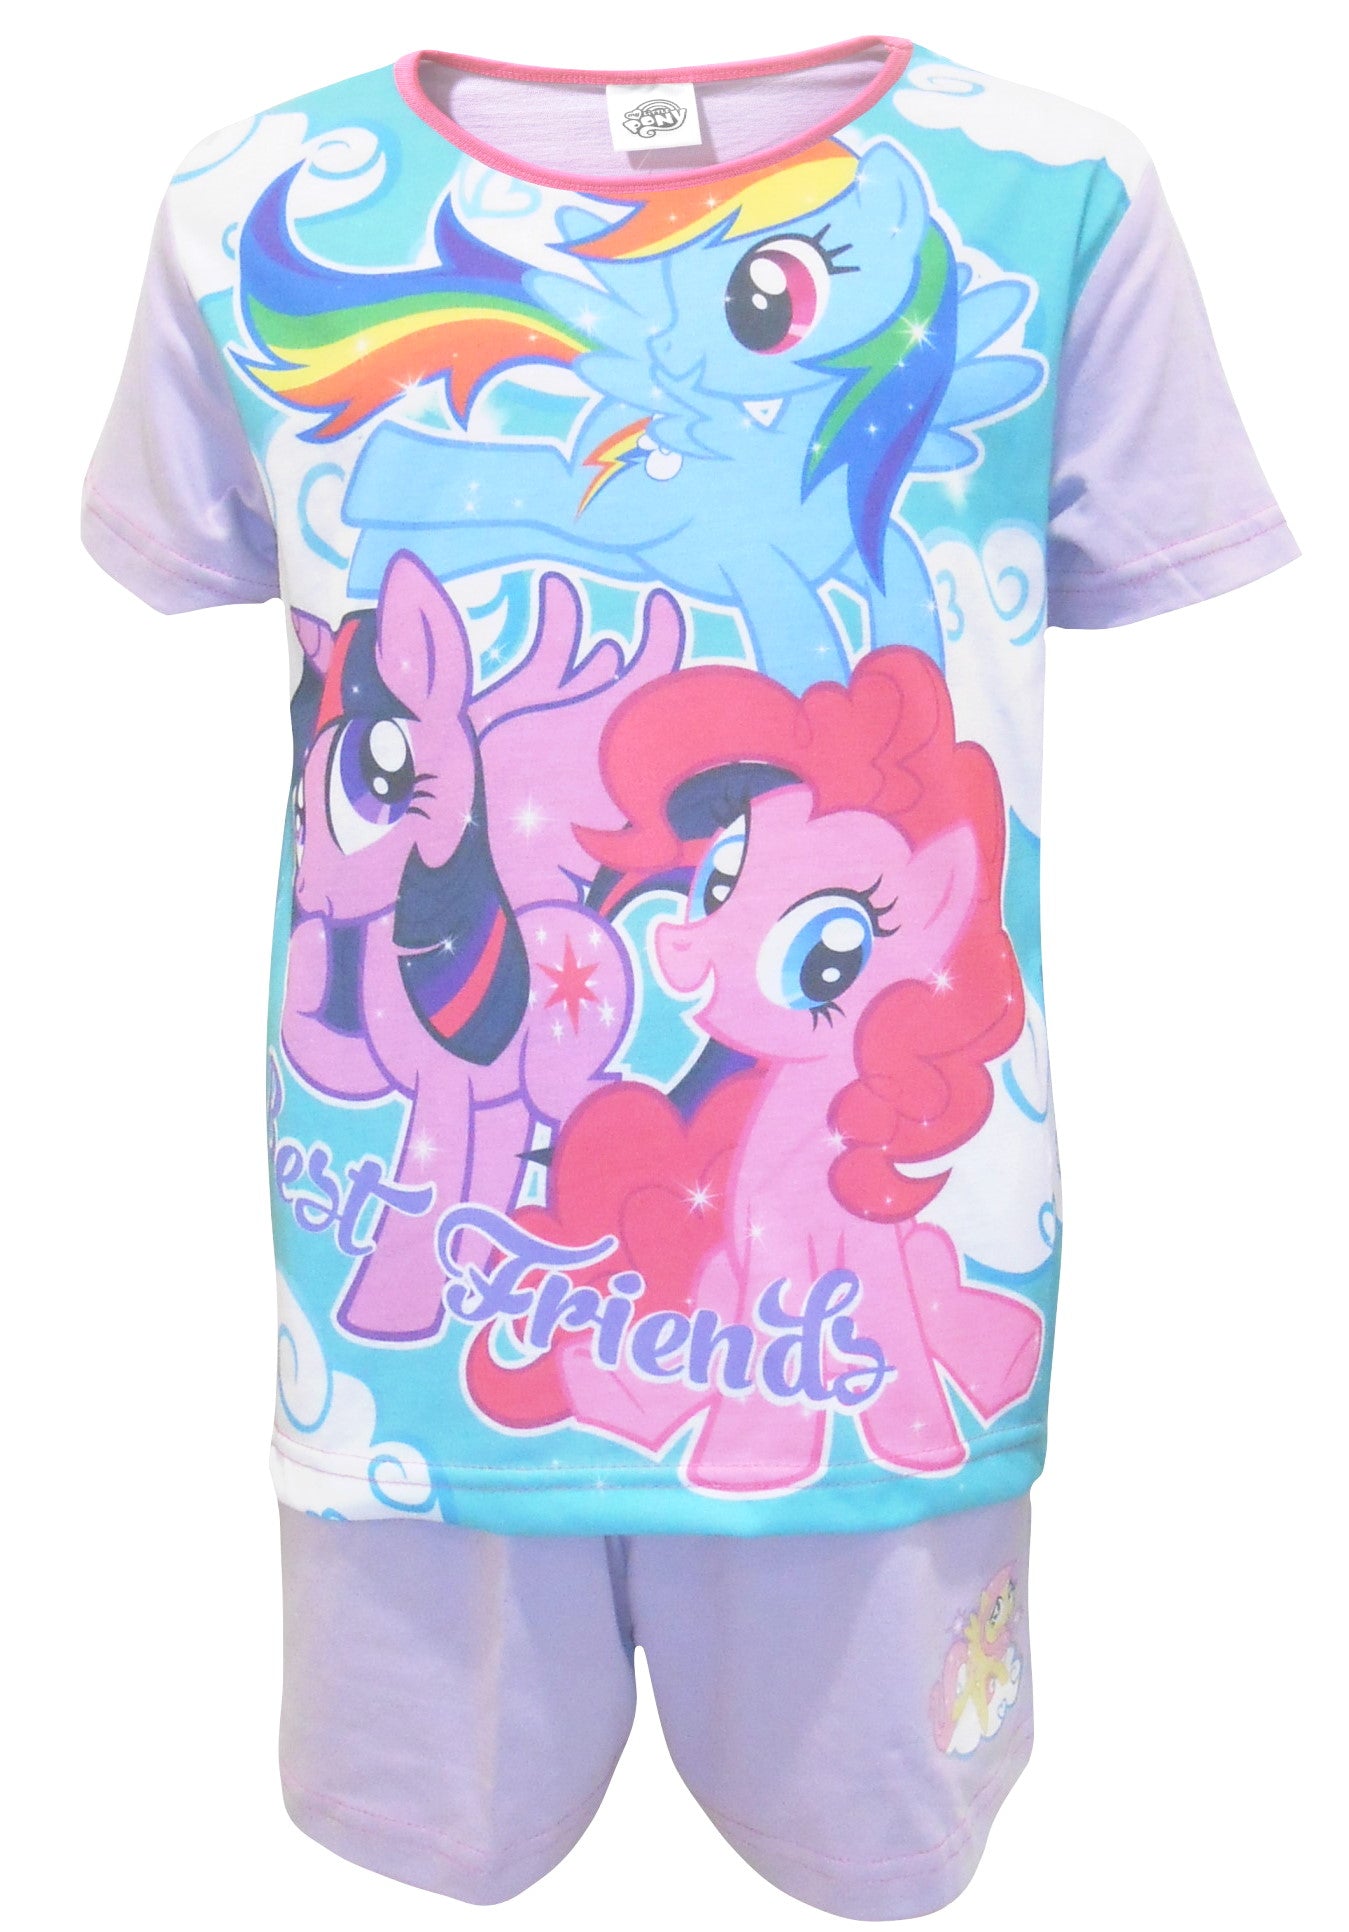 My Little Pony "Best Friends" Girls Shortie Pyjamas